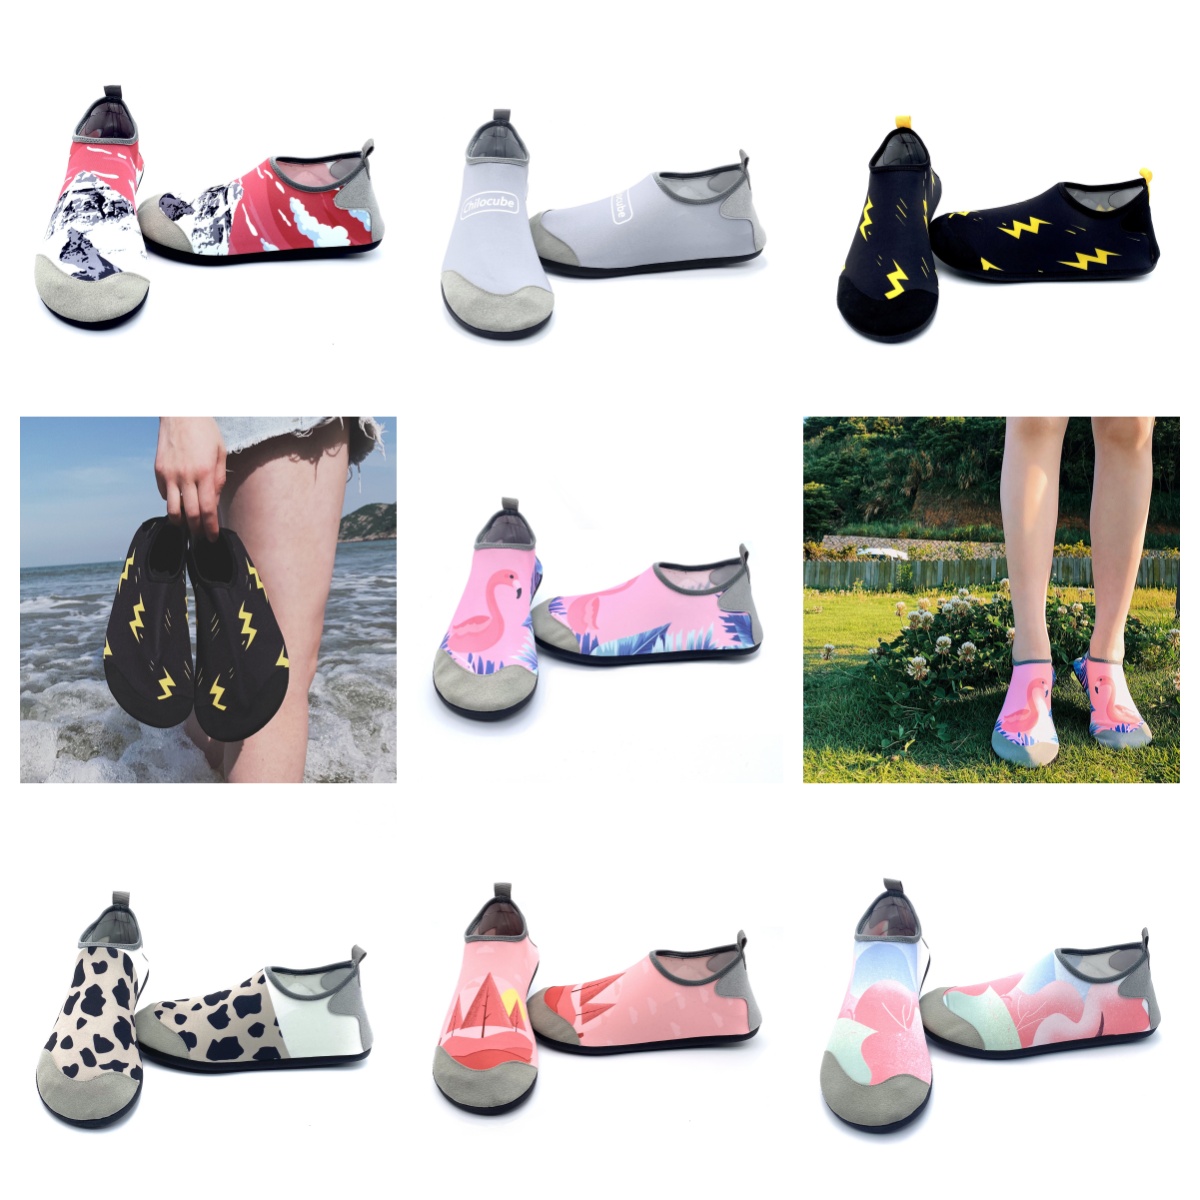 Athletic Shoes Gai Sandal Men and Womens Wading Shoe Barefoot Swimming Sport Shoes Purple Outdoor Beaches Sandal Par Creek Shoe Size EUR 35-46